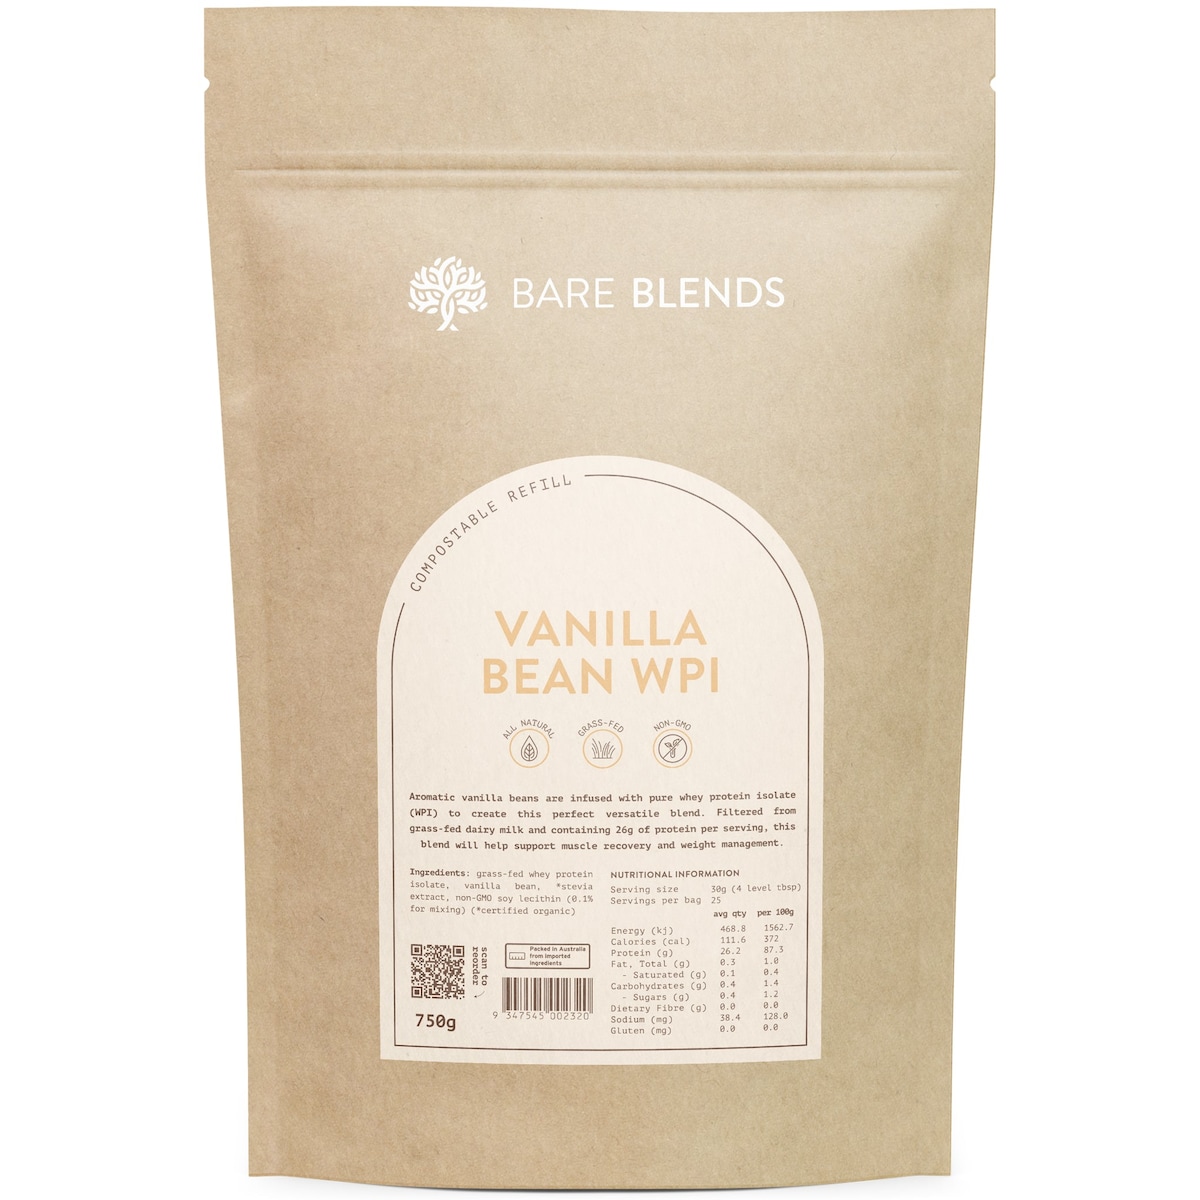 Bare Blends WPI Vanilla Bean 750g Australia